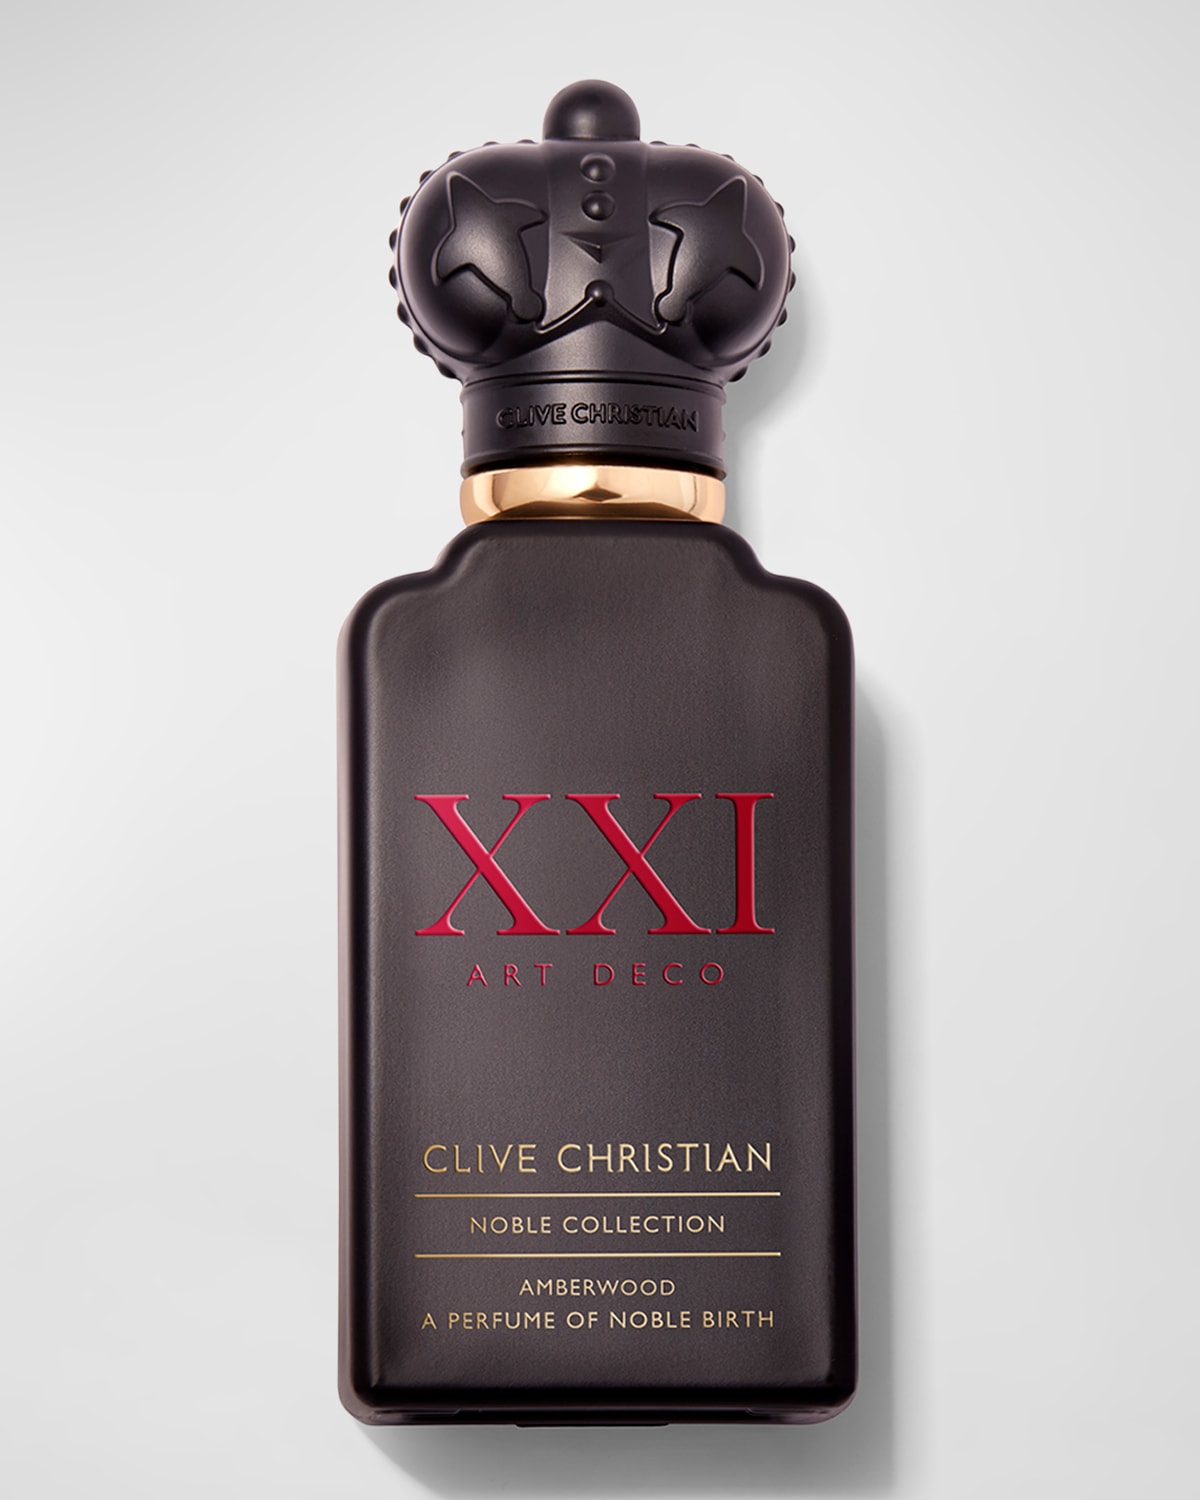 Clive Christian Noble Collection XXI Art Deco Amberwood Eau de Parfum, 1.7 oz.